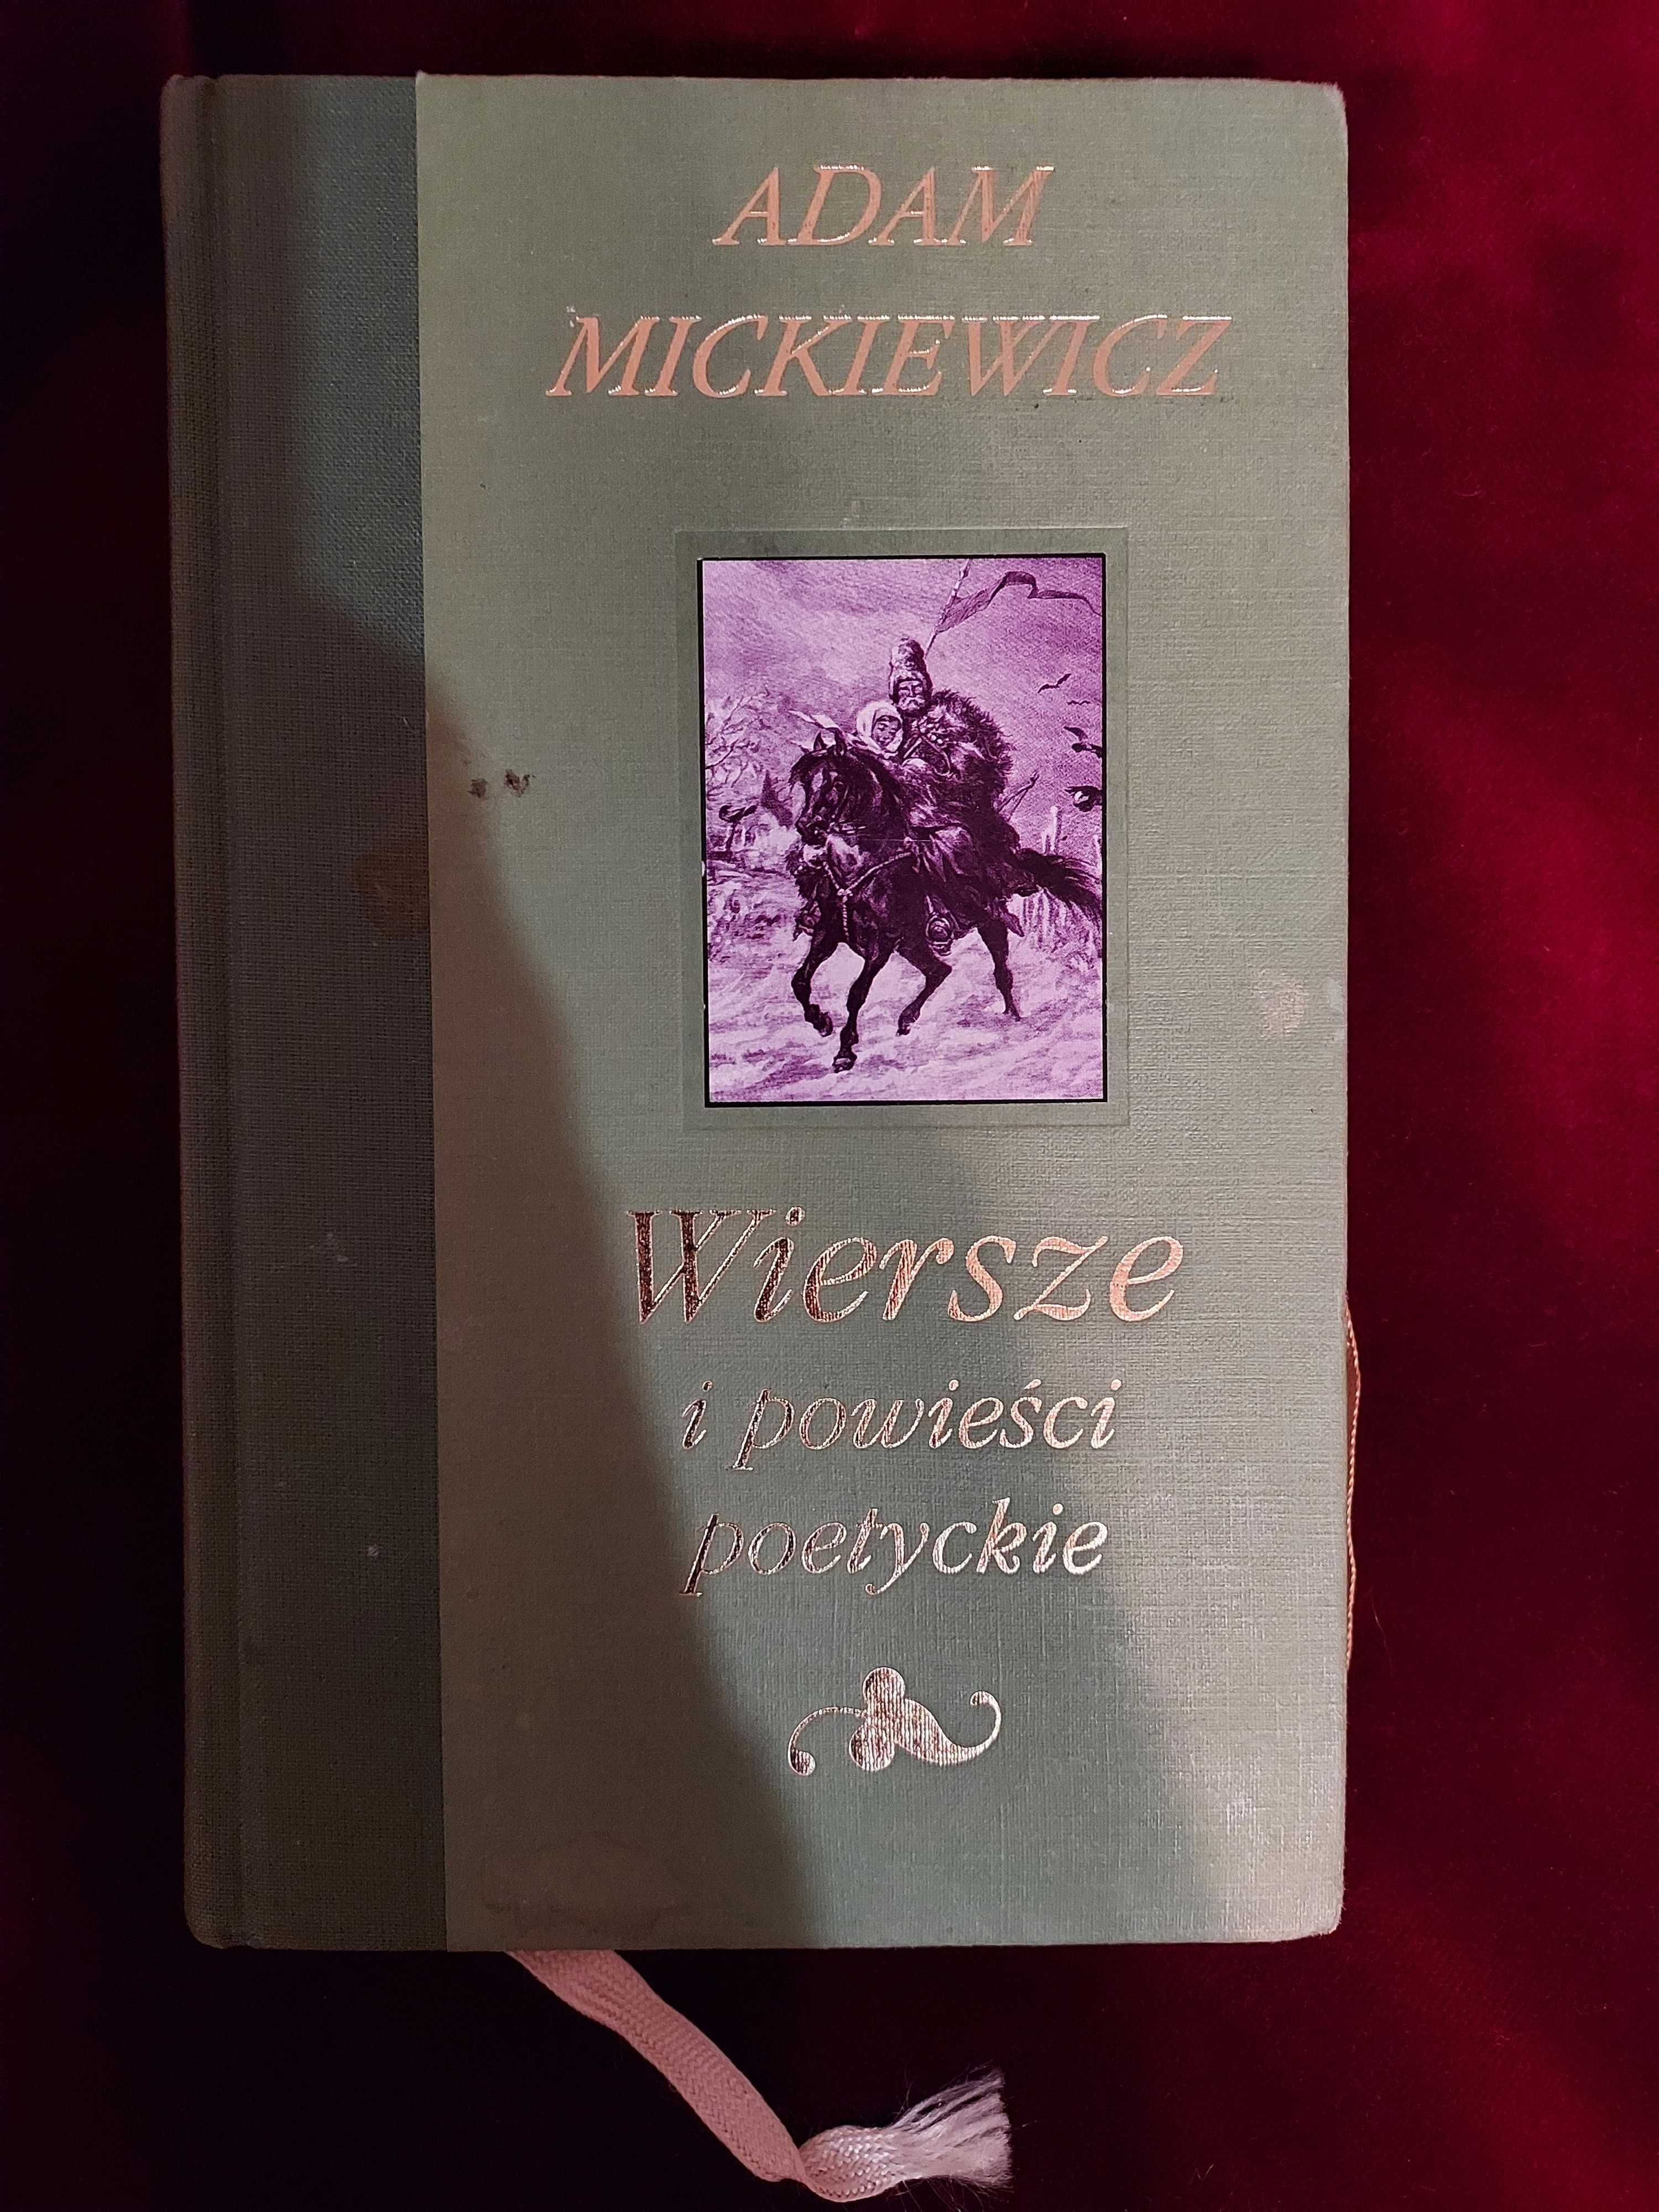 A. Mickiewicz, Wiersze i powiesci poetyckie